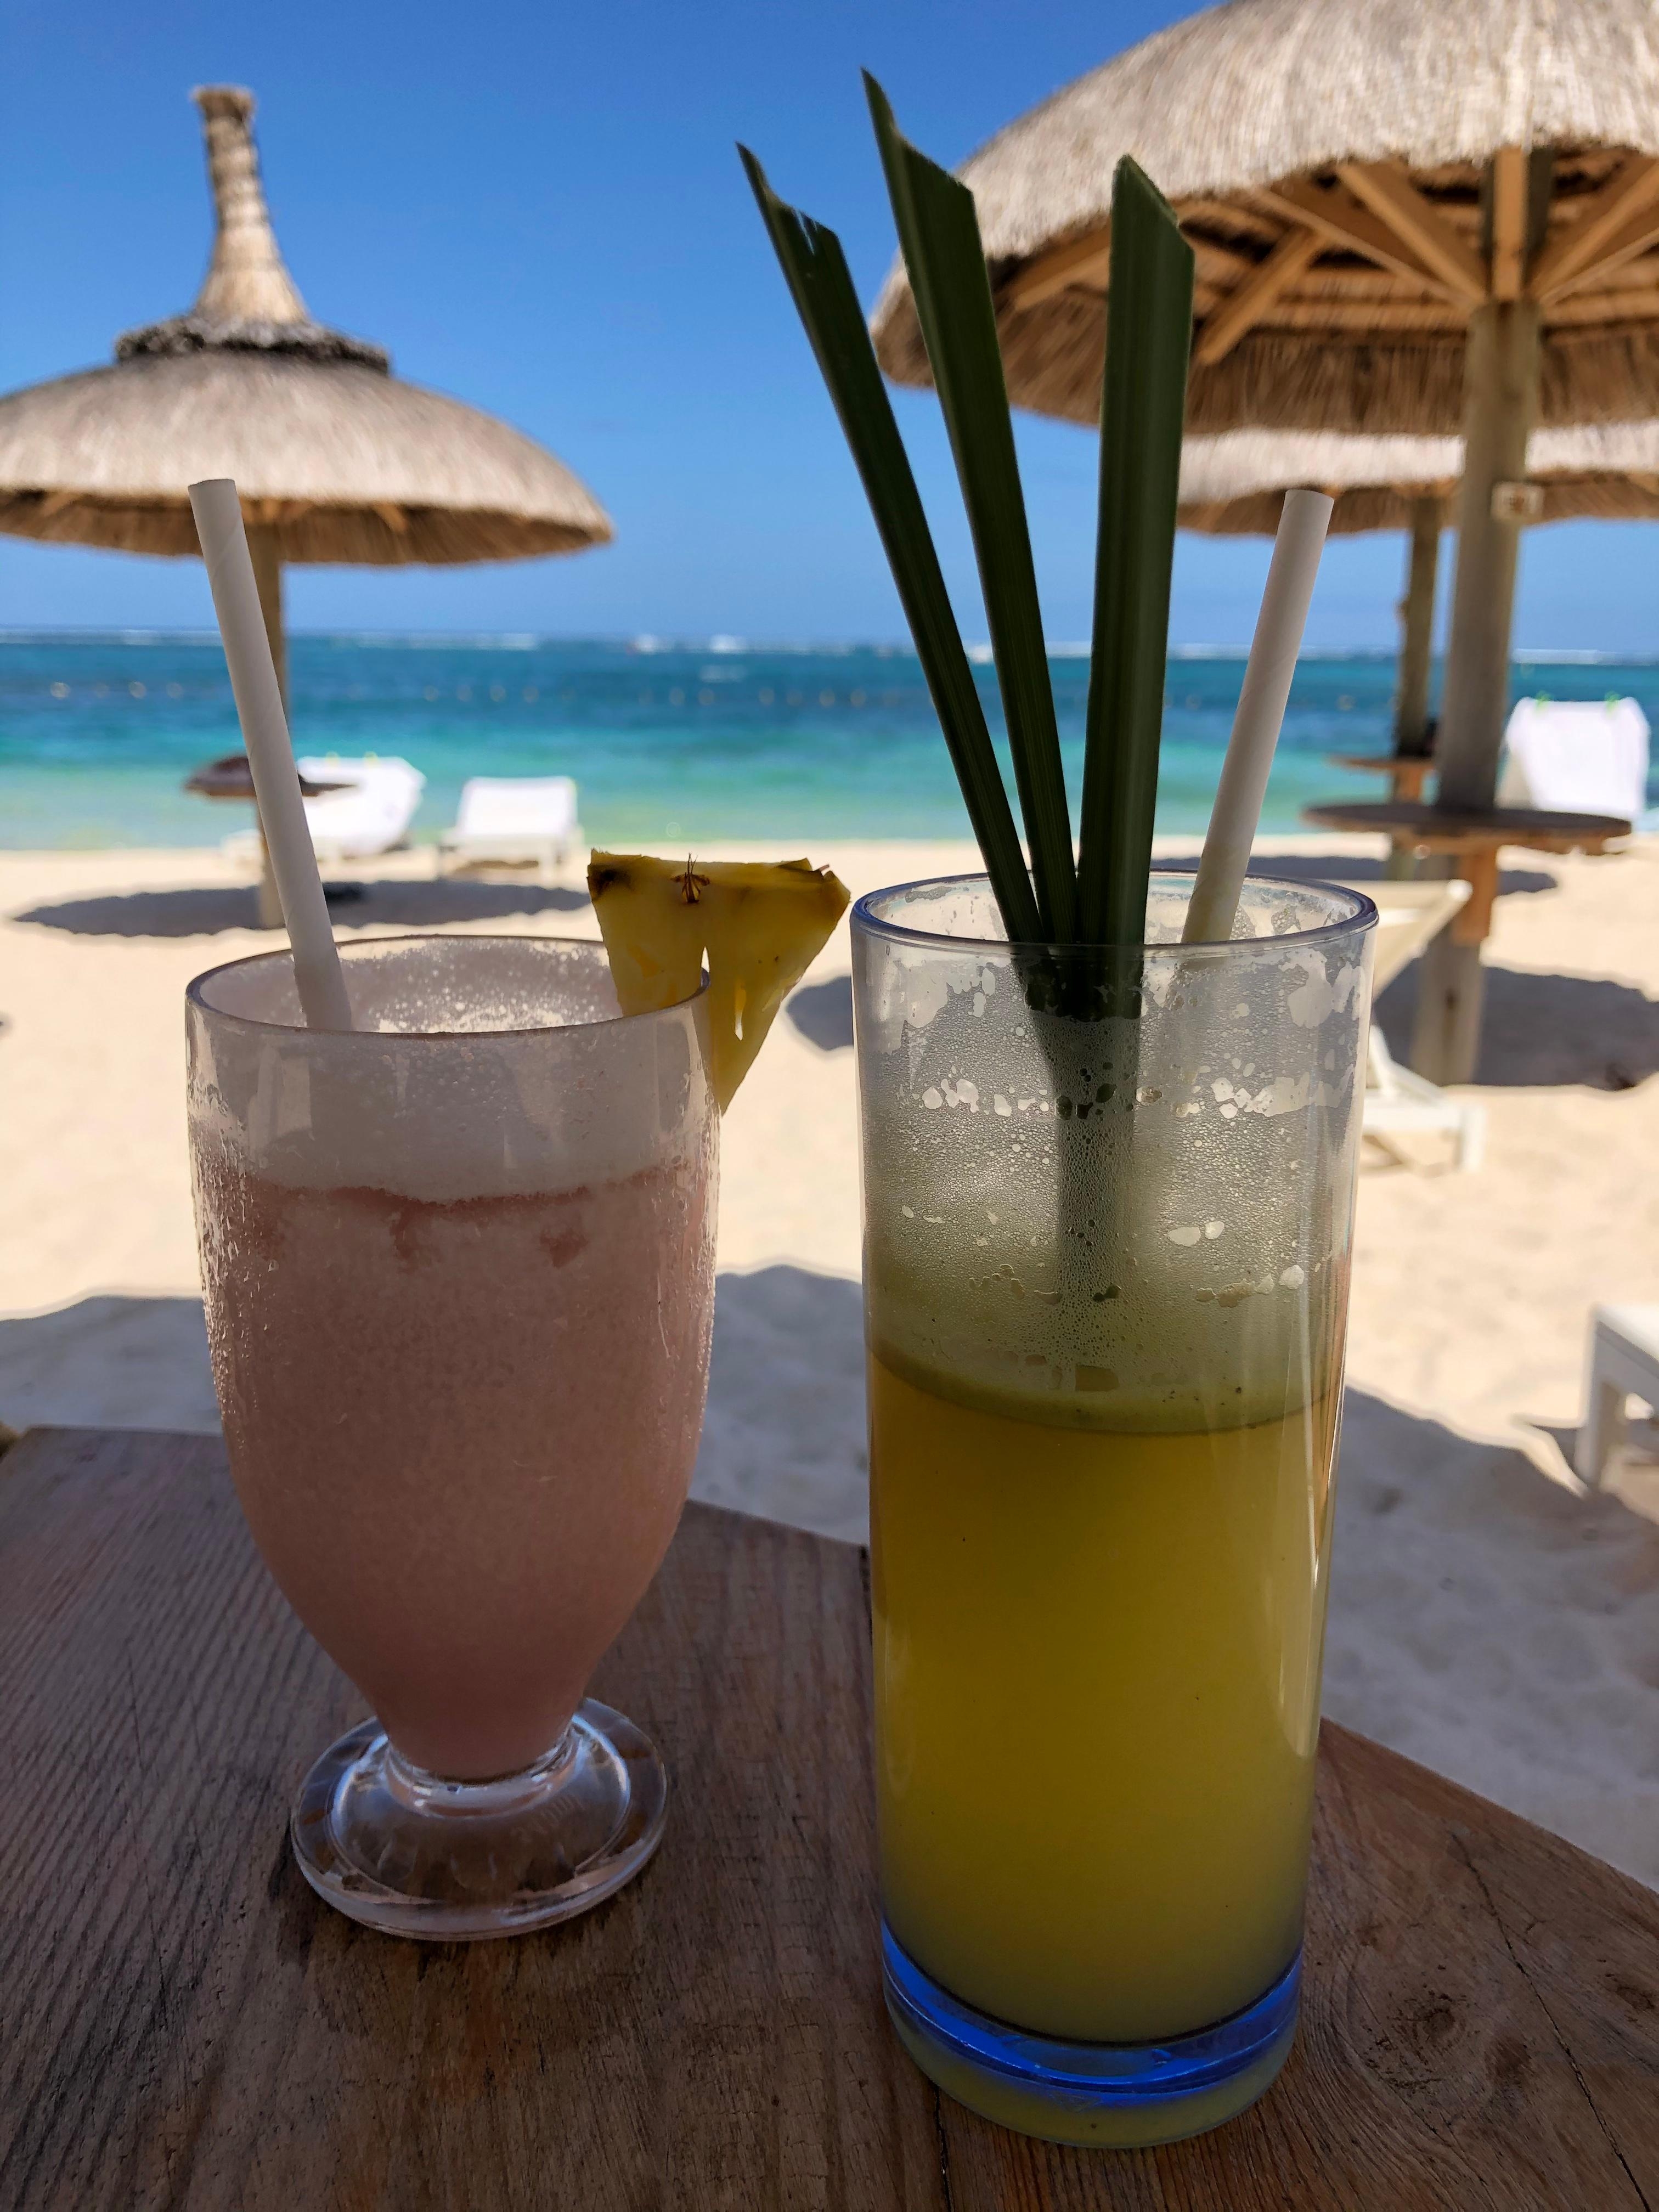 #mauritius #travel #paradise #cocktails